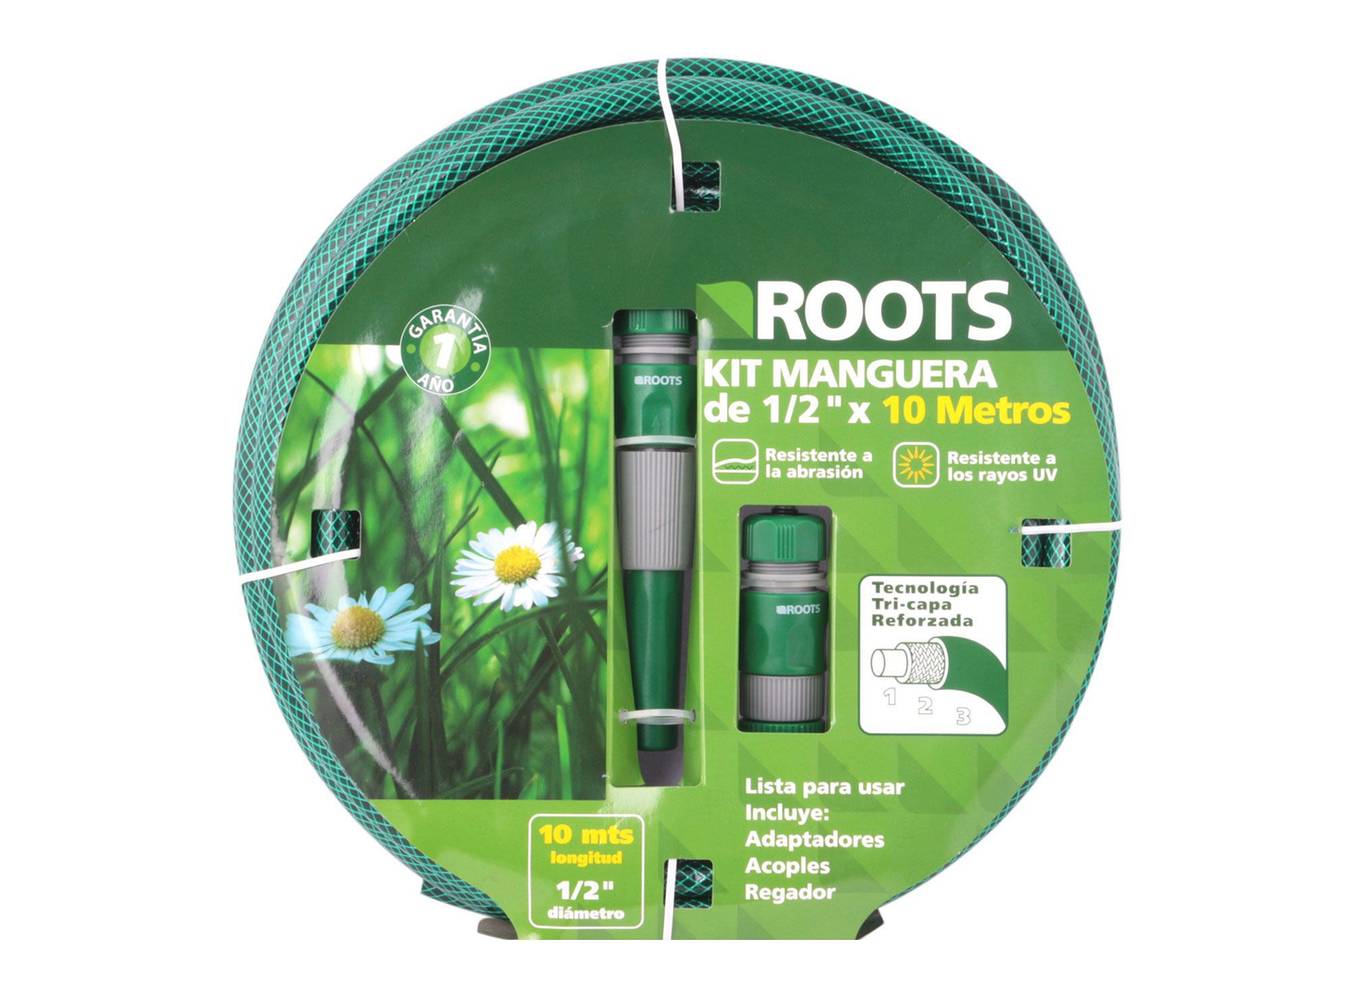 Roots kit manguera 1,2'' 10 m verde (1 adaptador para llave, regador ajustable, 2 acoples rápidos)